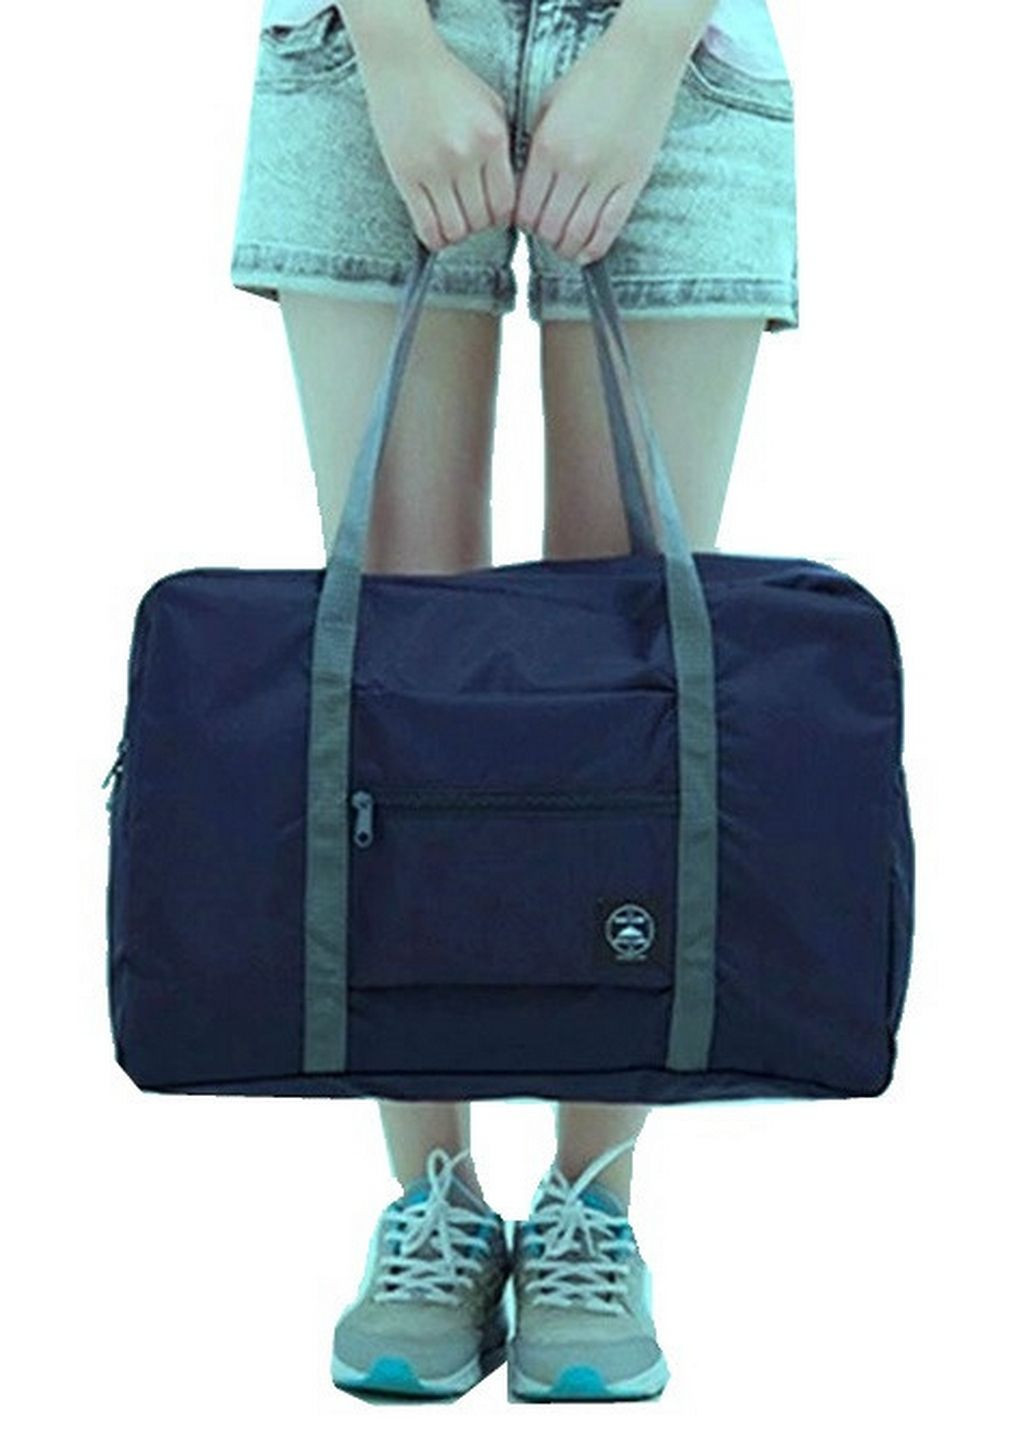 Складная дорожная, спортивная сумка 25L DKM Bag No Brand (279319731)